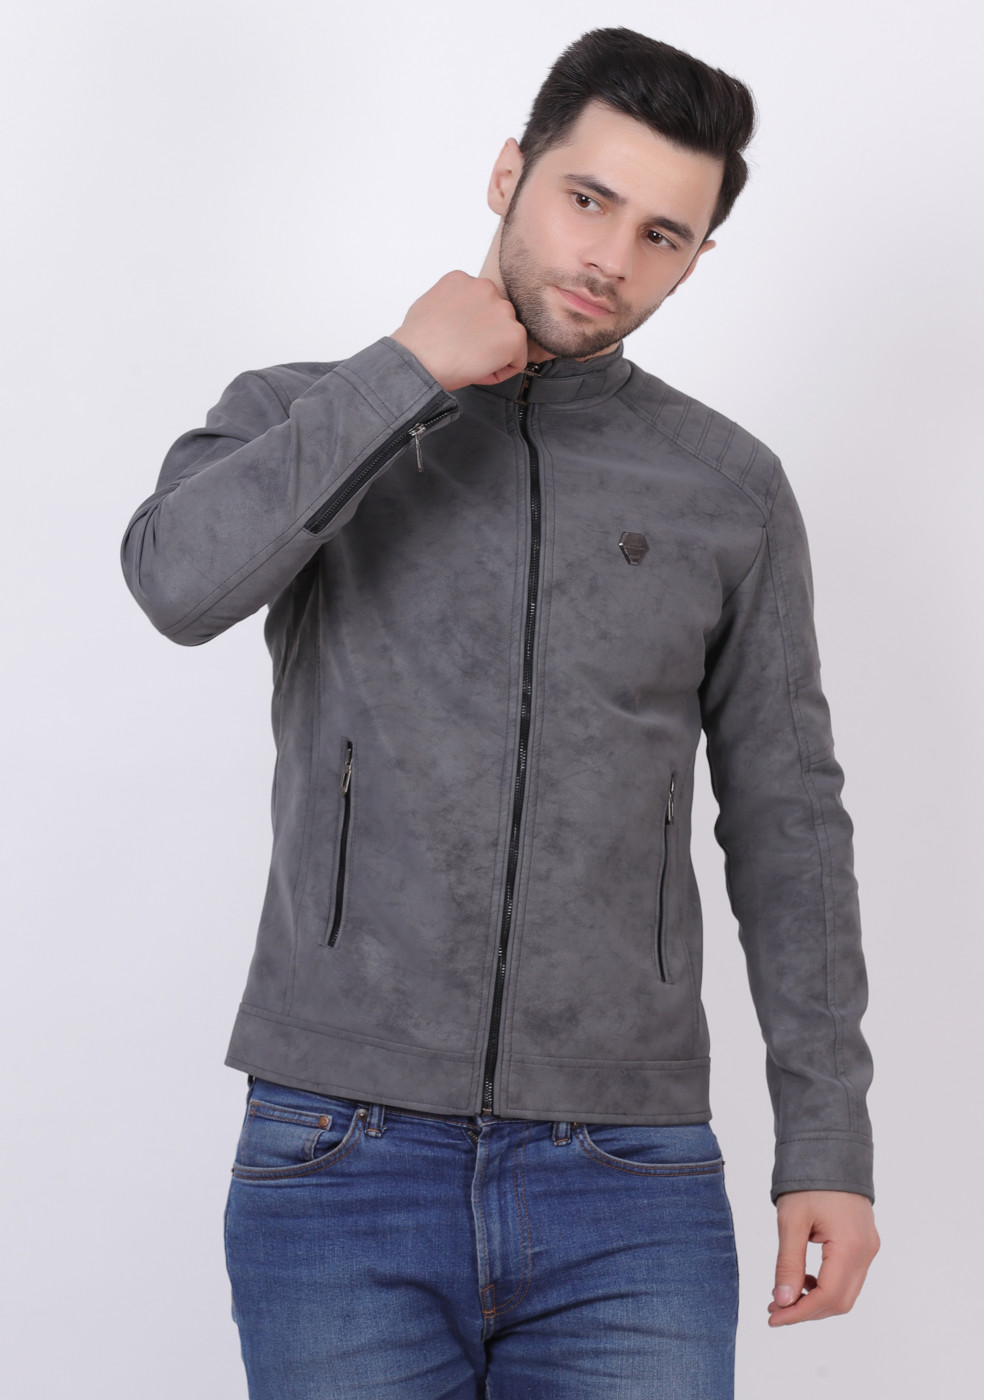 Men Stylish Gray Leather Jacket